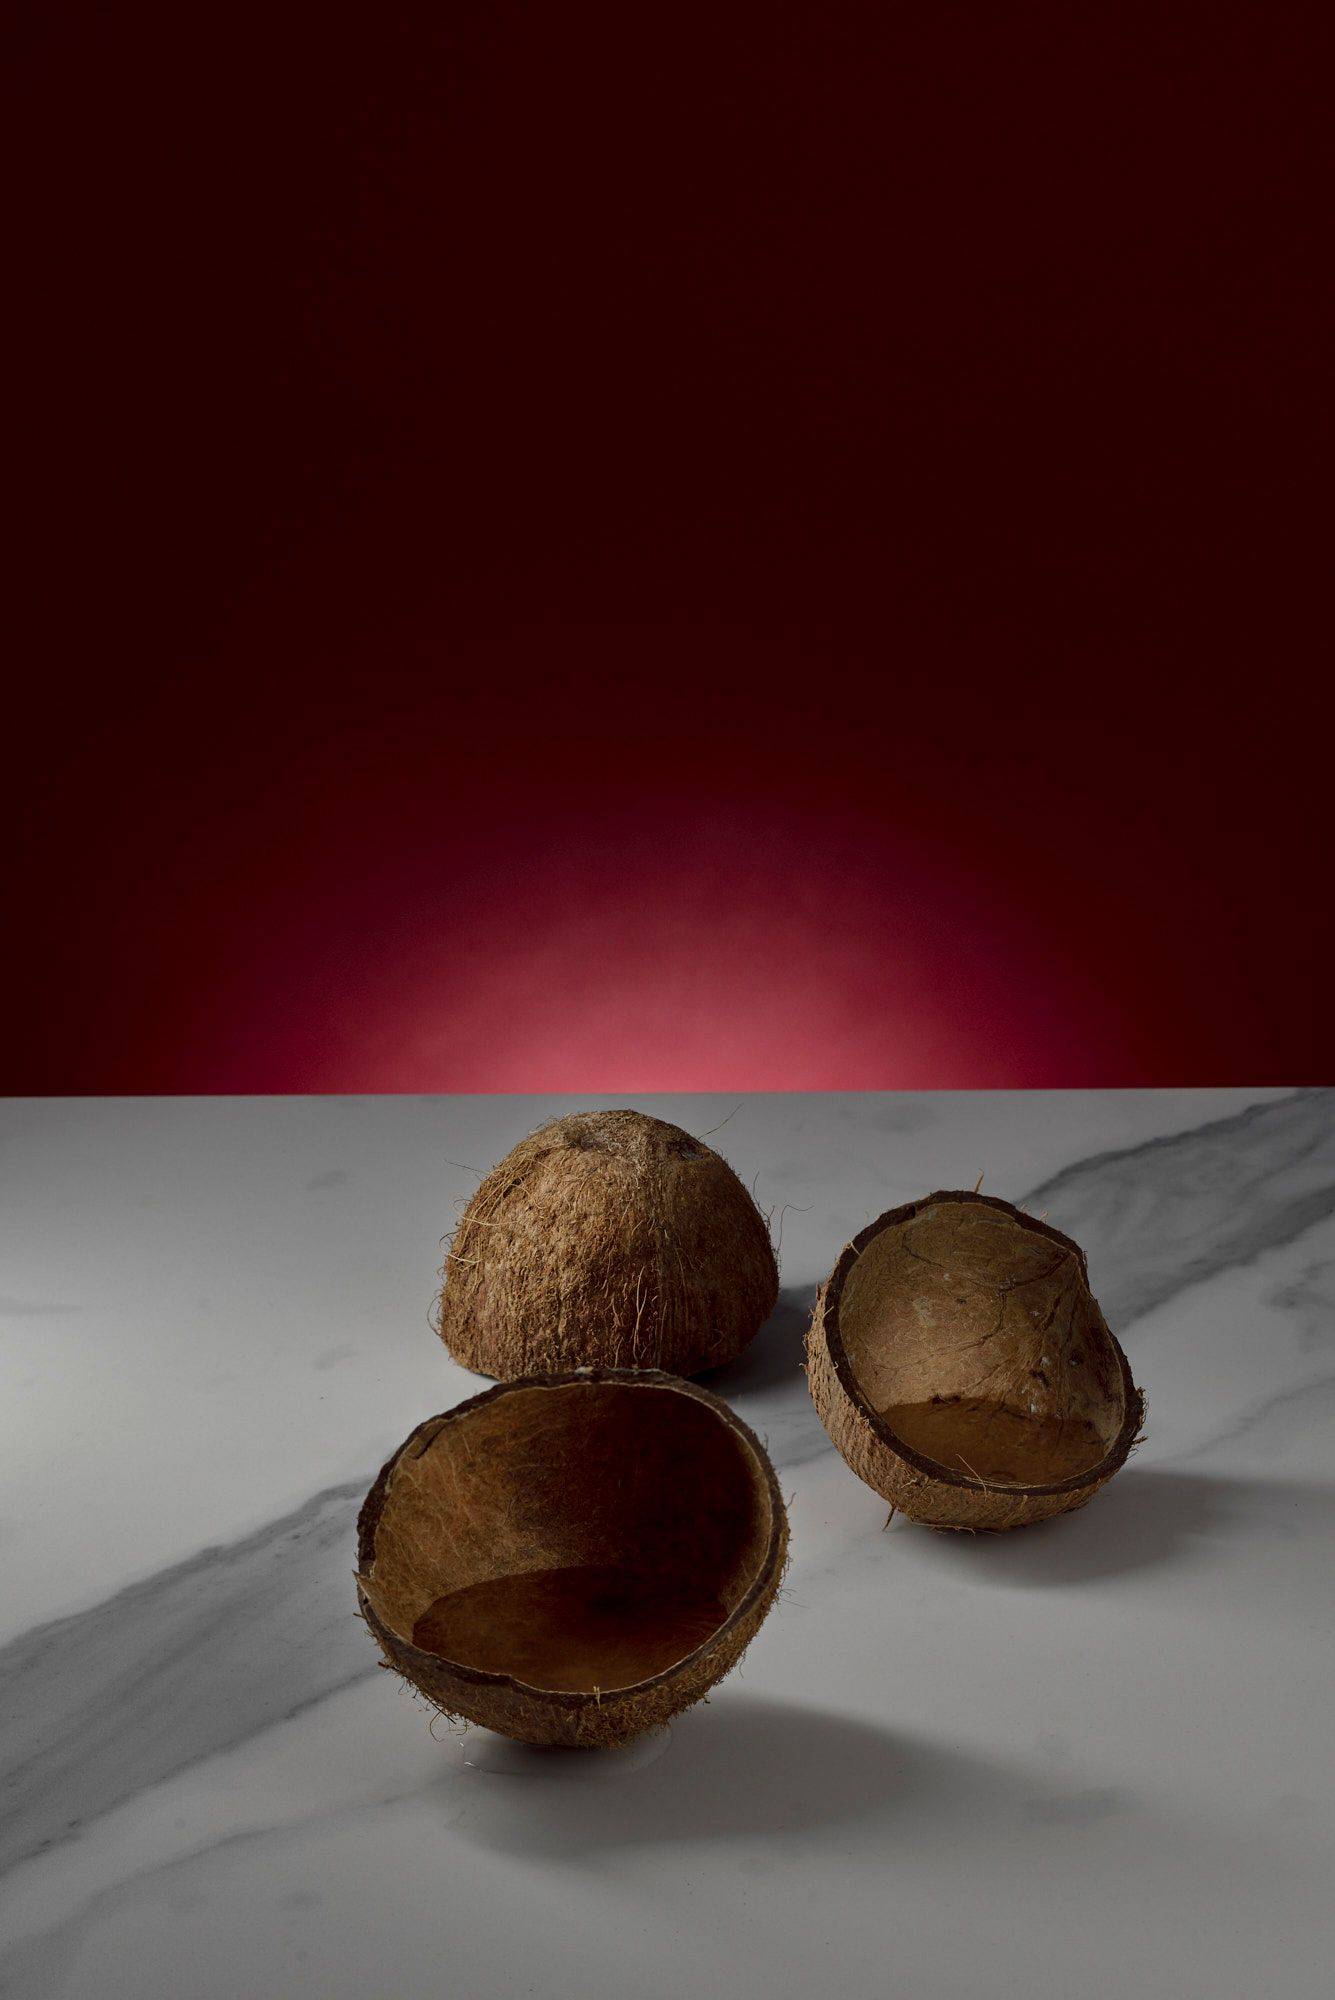 kokosnusswasser in kokosnussschalen auf marmoriertem sapienstone top mit rotem hintergrund